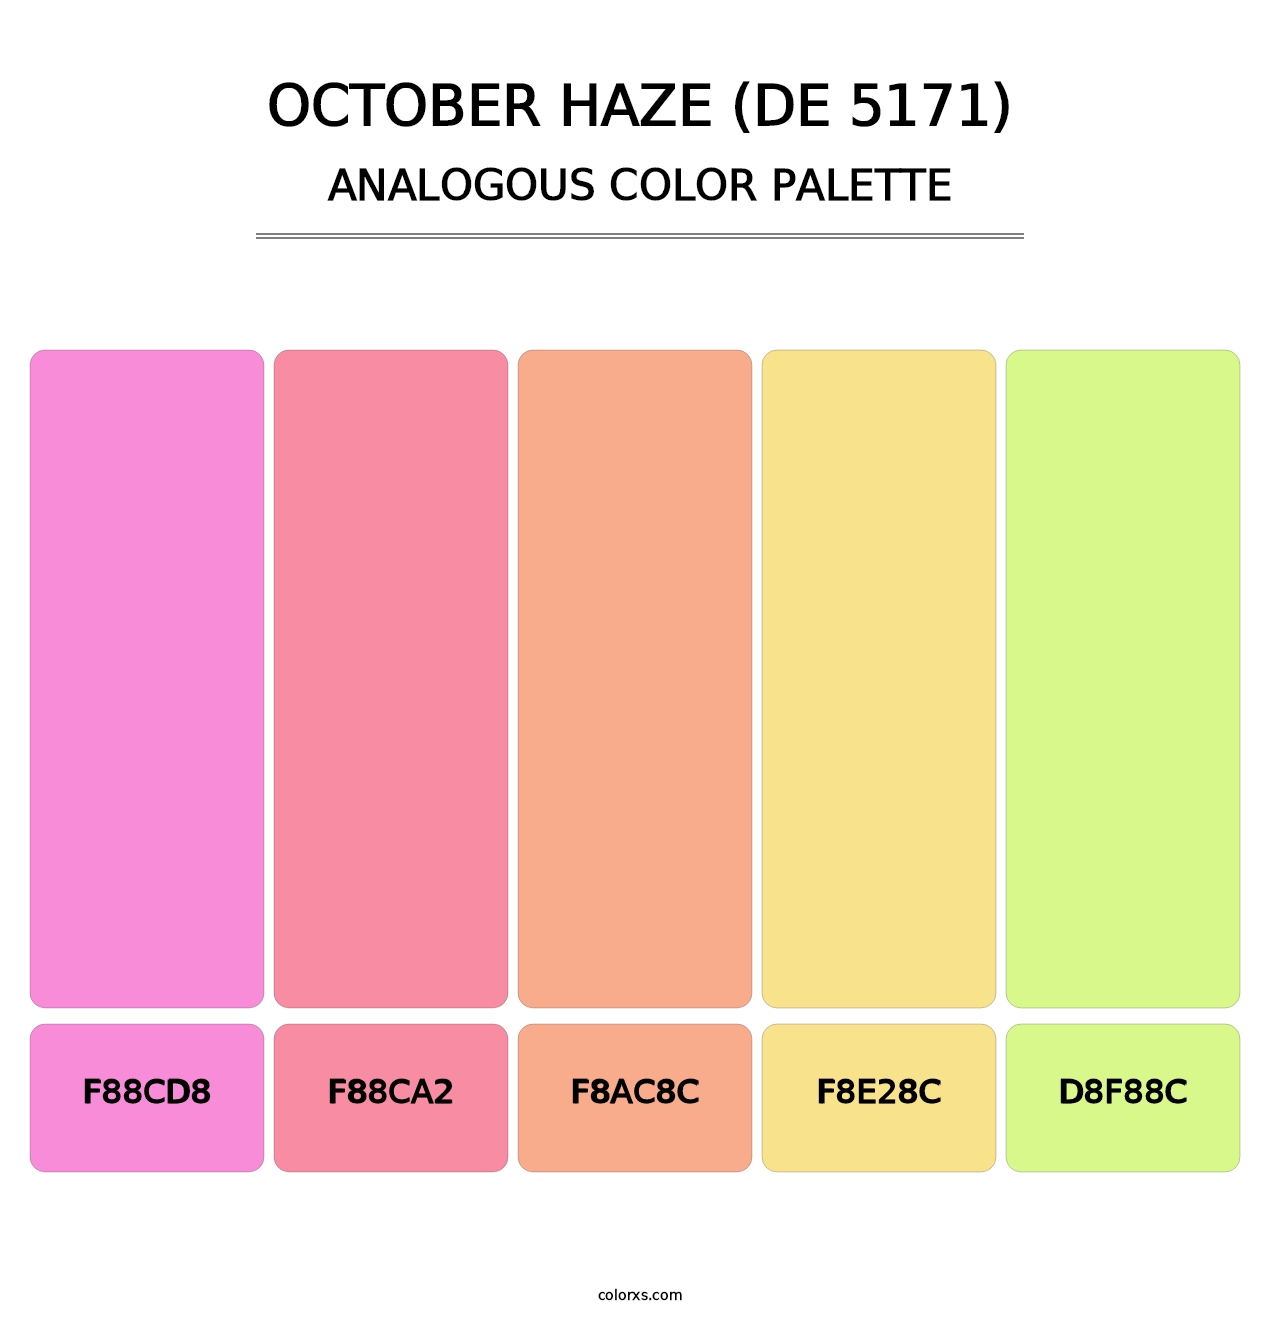 October Haze (DE 5171) - Analogous Color Palette